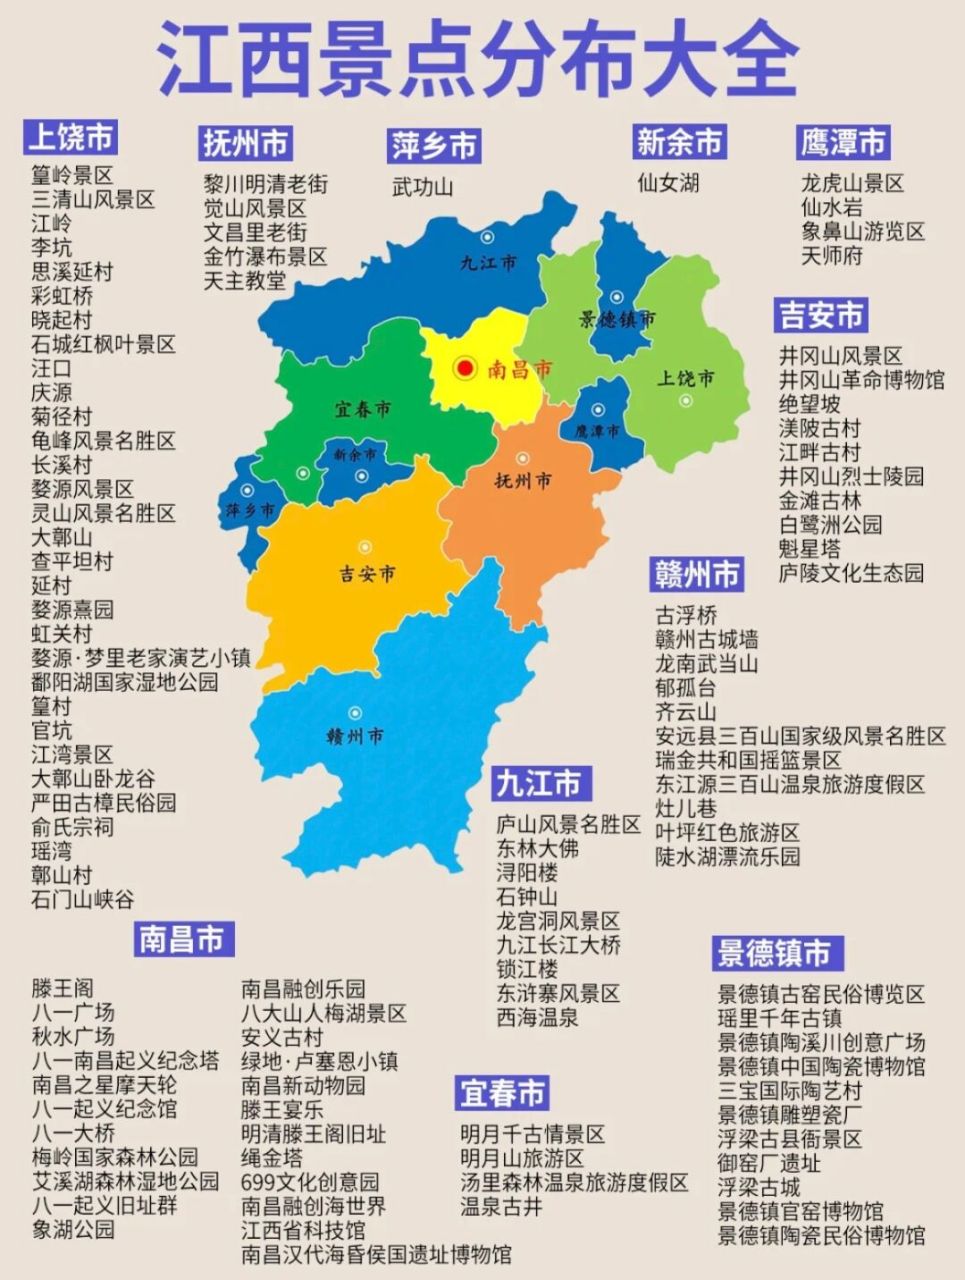 江西是我国旅游资源非常丰富的省份,2022年江西省共接待游客7